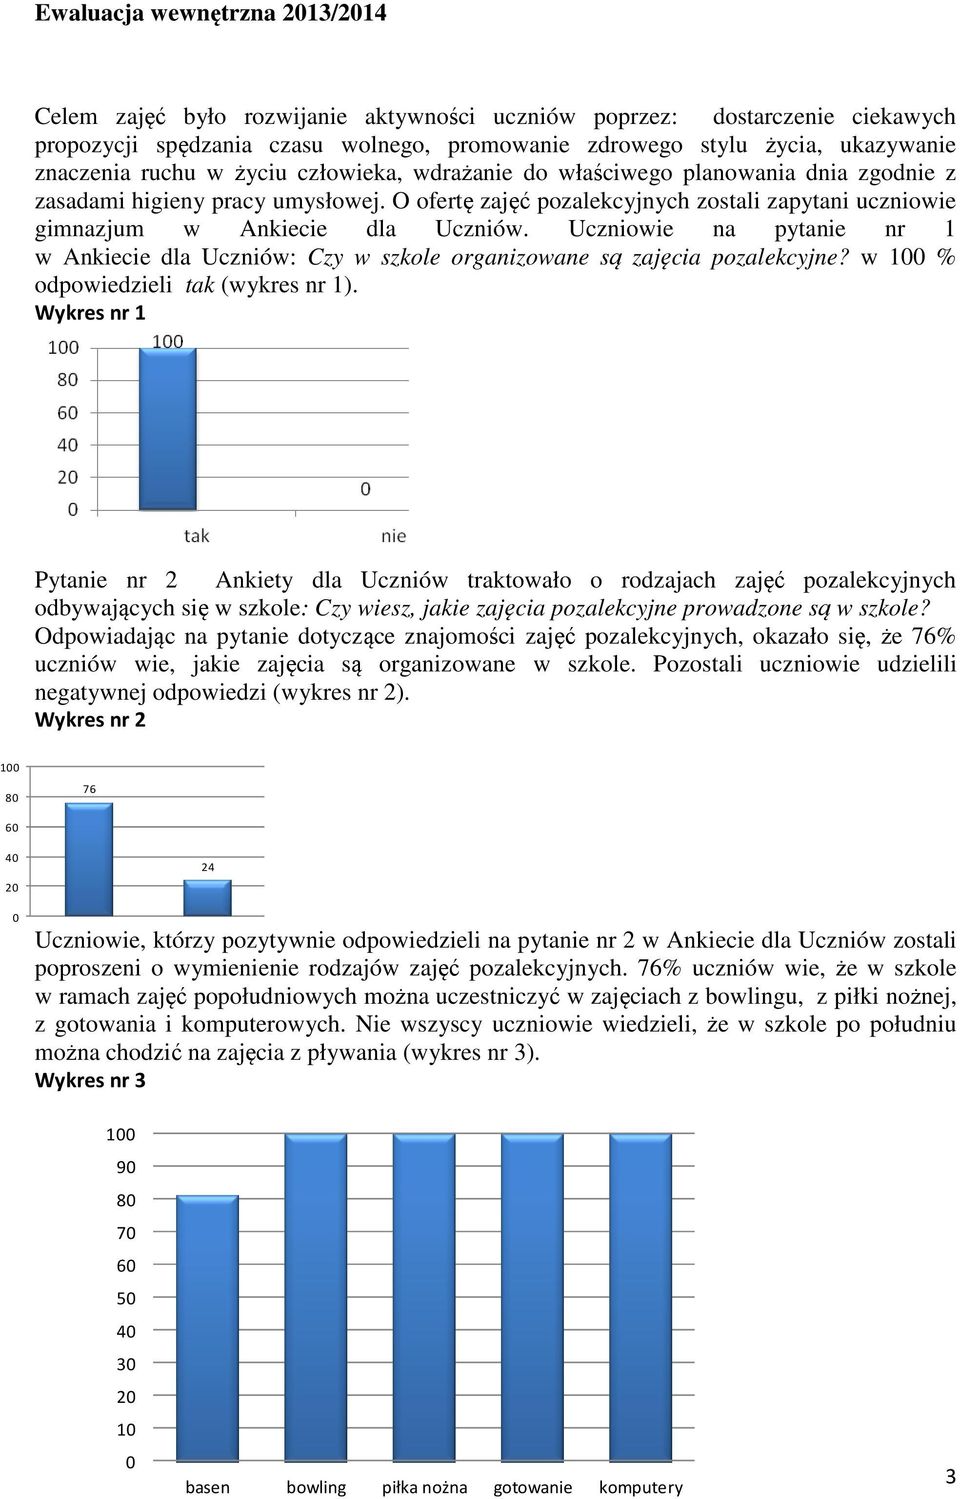 Uczniowie na pytanie nr 1 w Ankiecie dla Uczniów: Czy w szkole organizowane są zajęcia pozalekcyjne? w 1 % odpowiedzieli tak (wykres nr 1).